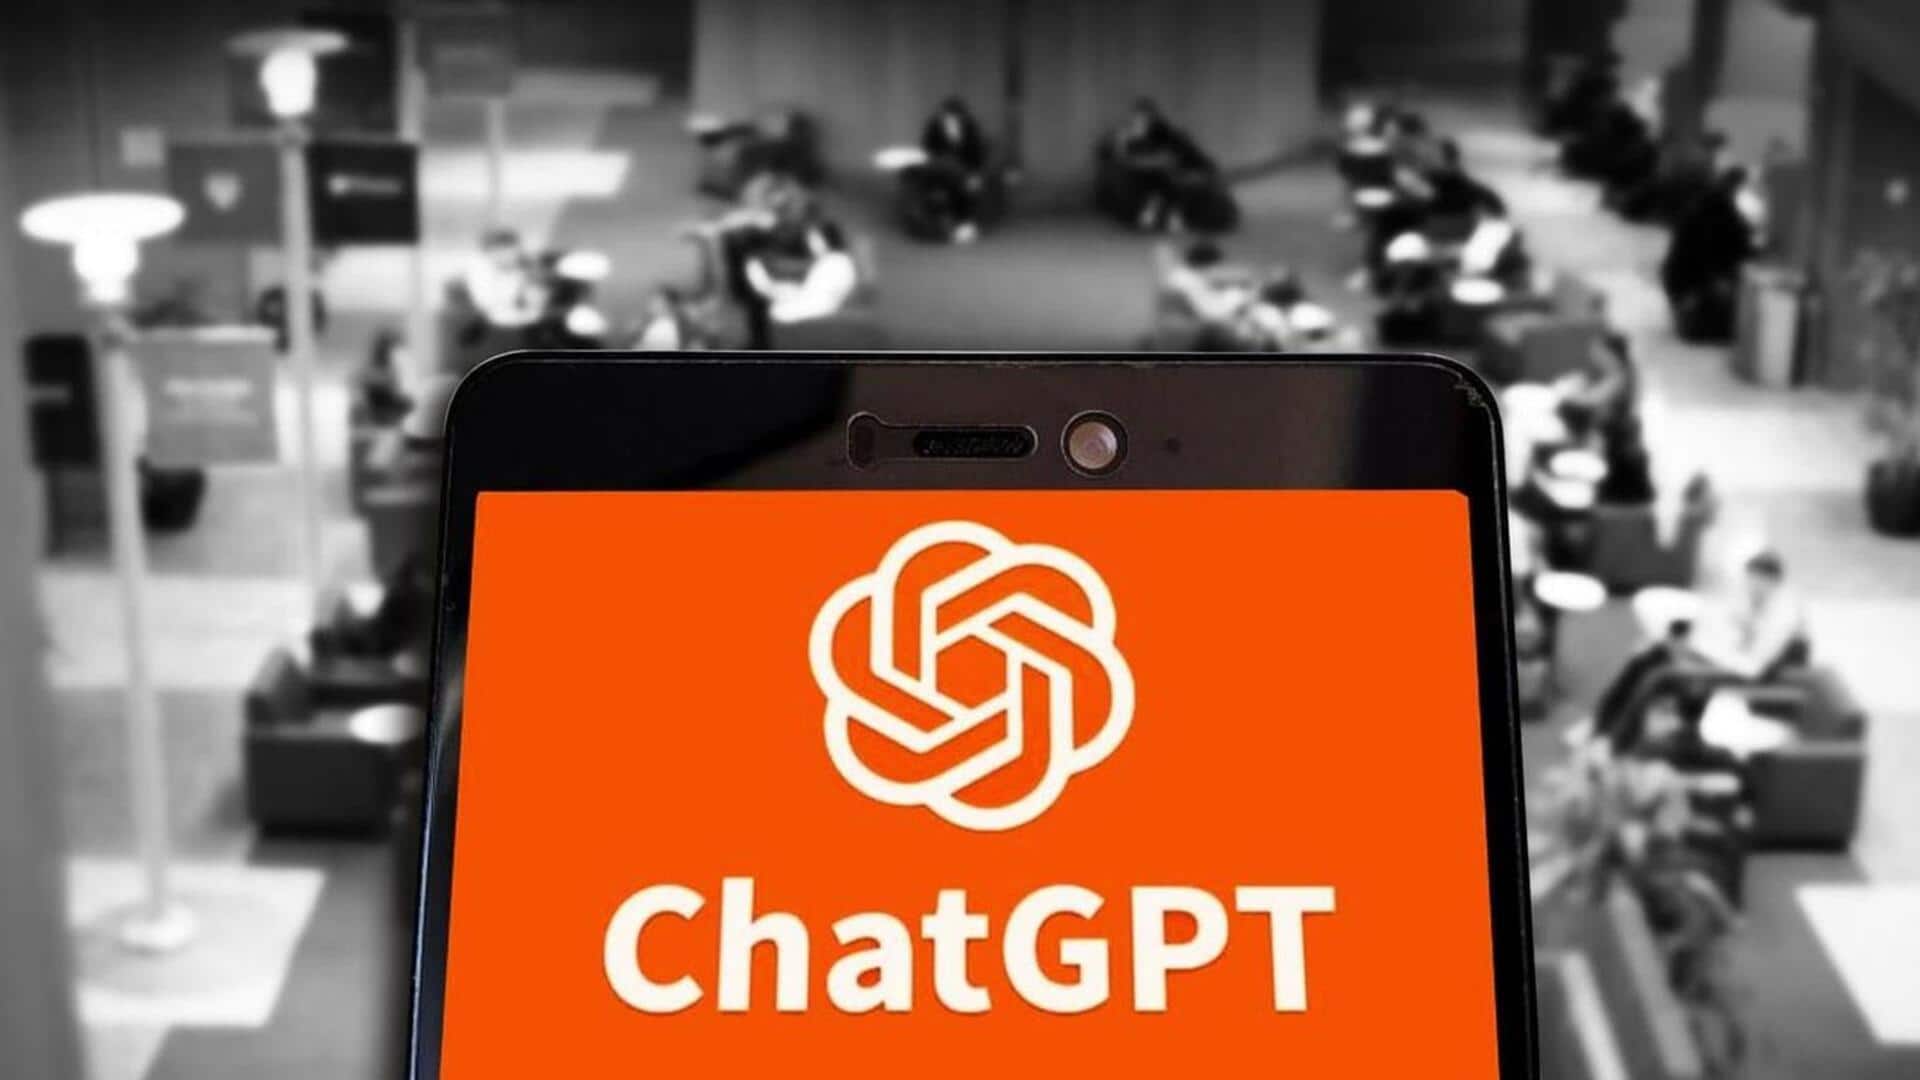 ChatGPT जैसे AI चैटबॉट्स का उपयोग कर बनाई गईं न्यूज वेबसाइट्स, फैला रही फेक न्यूज- रिपोर्ट